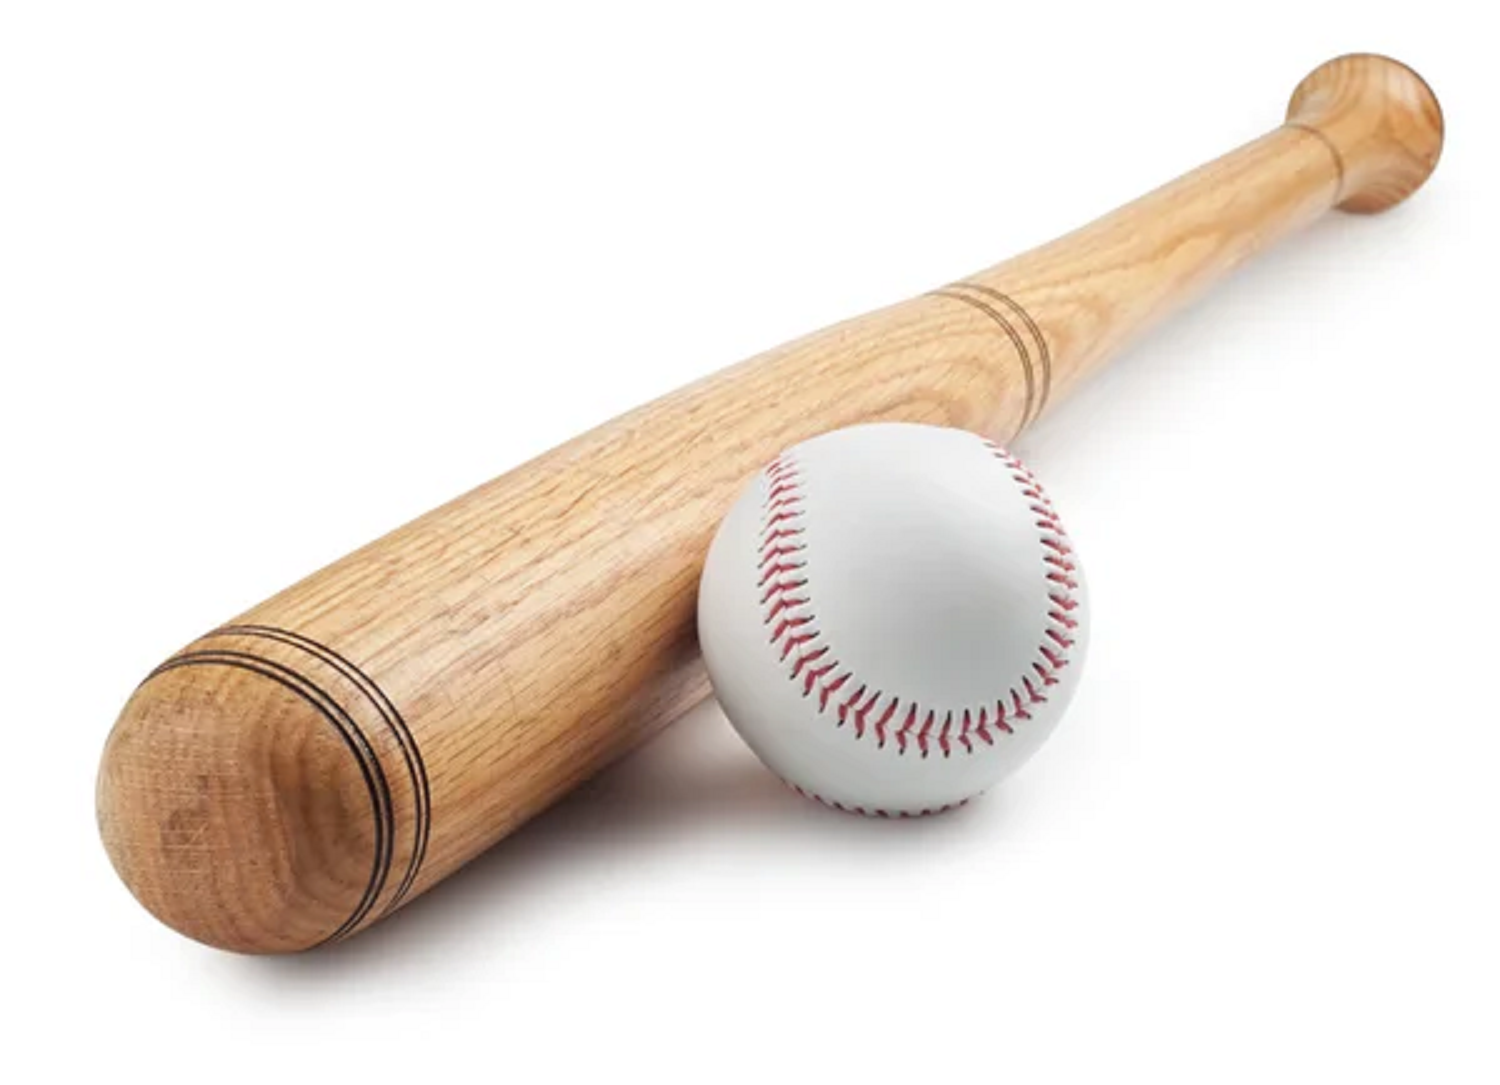 Buy Wholesale India Heavy Duty Wooden Baseball Bat Training